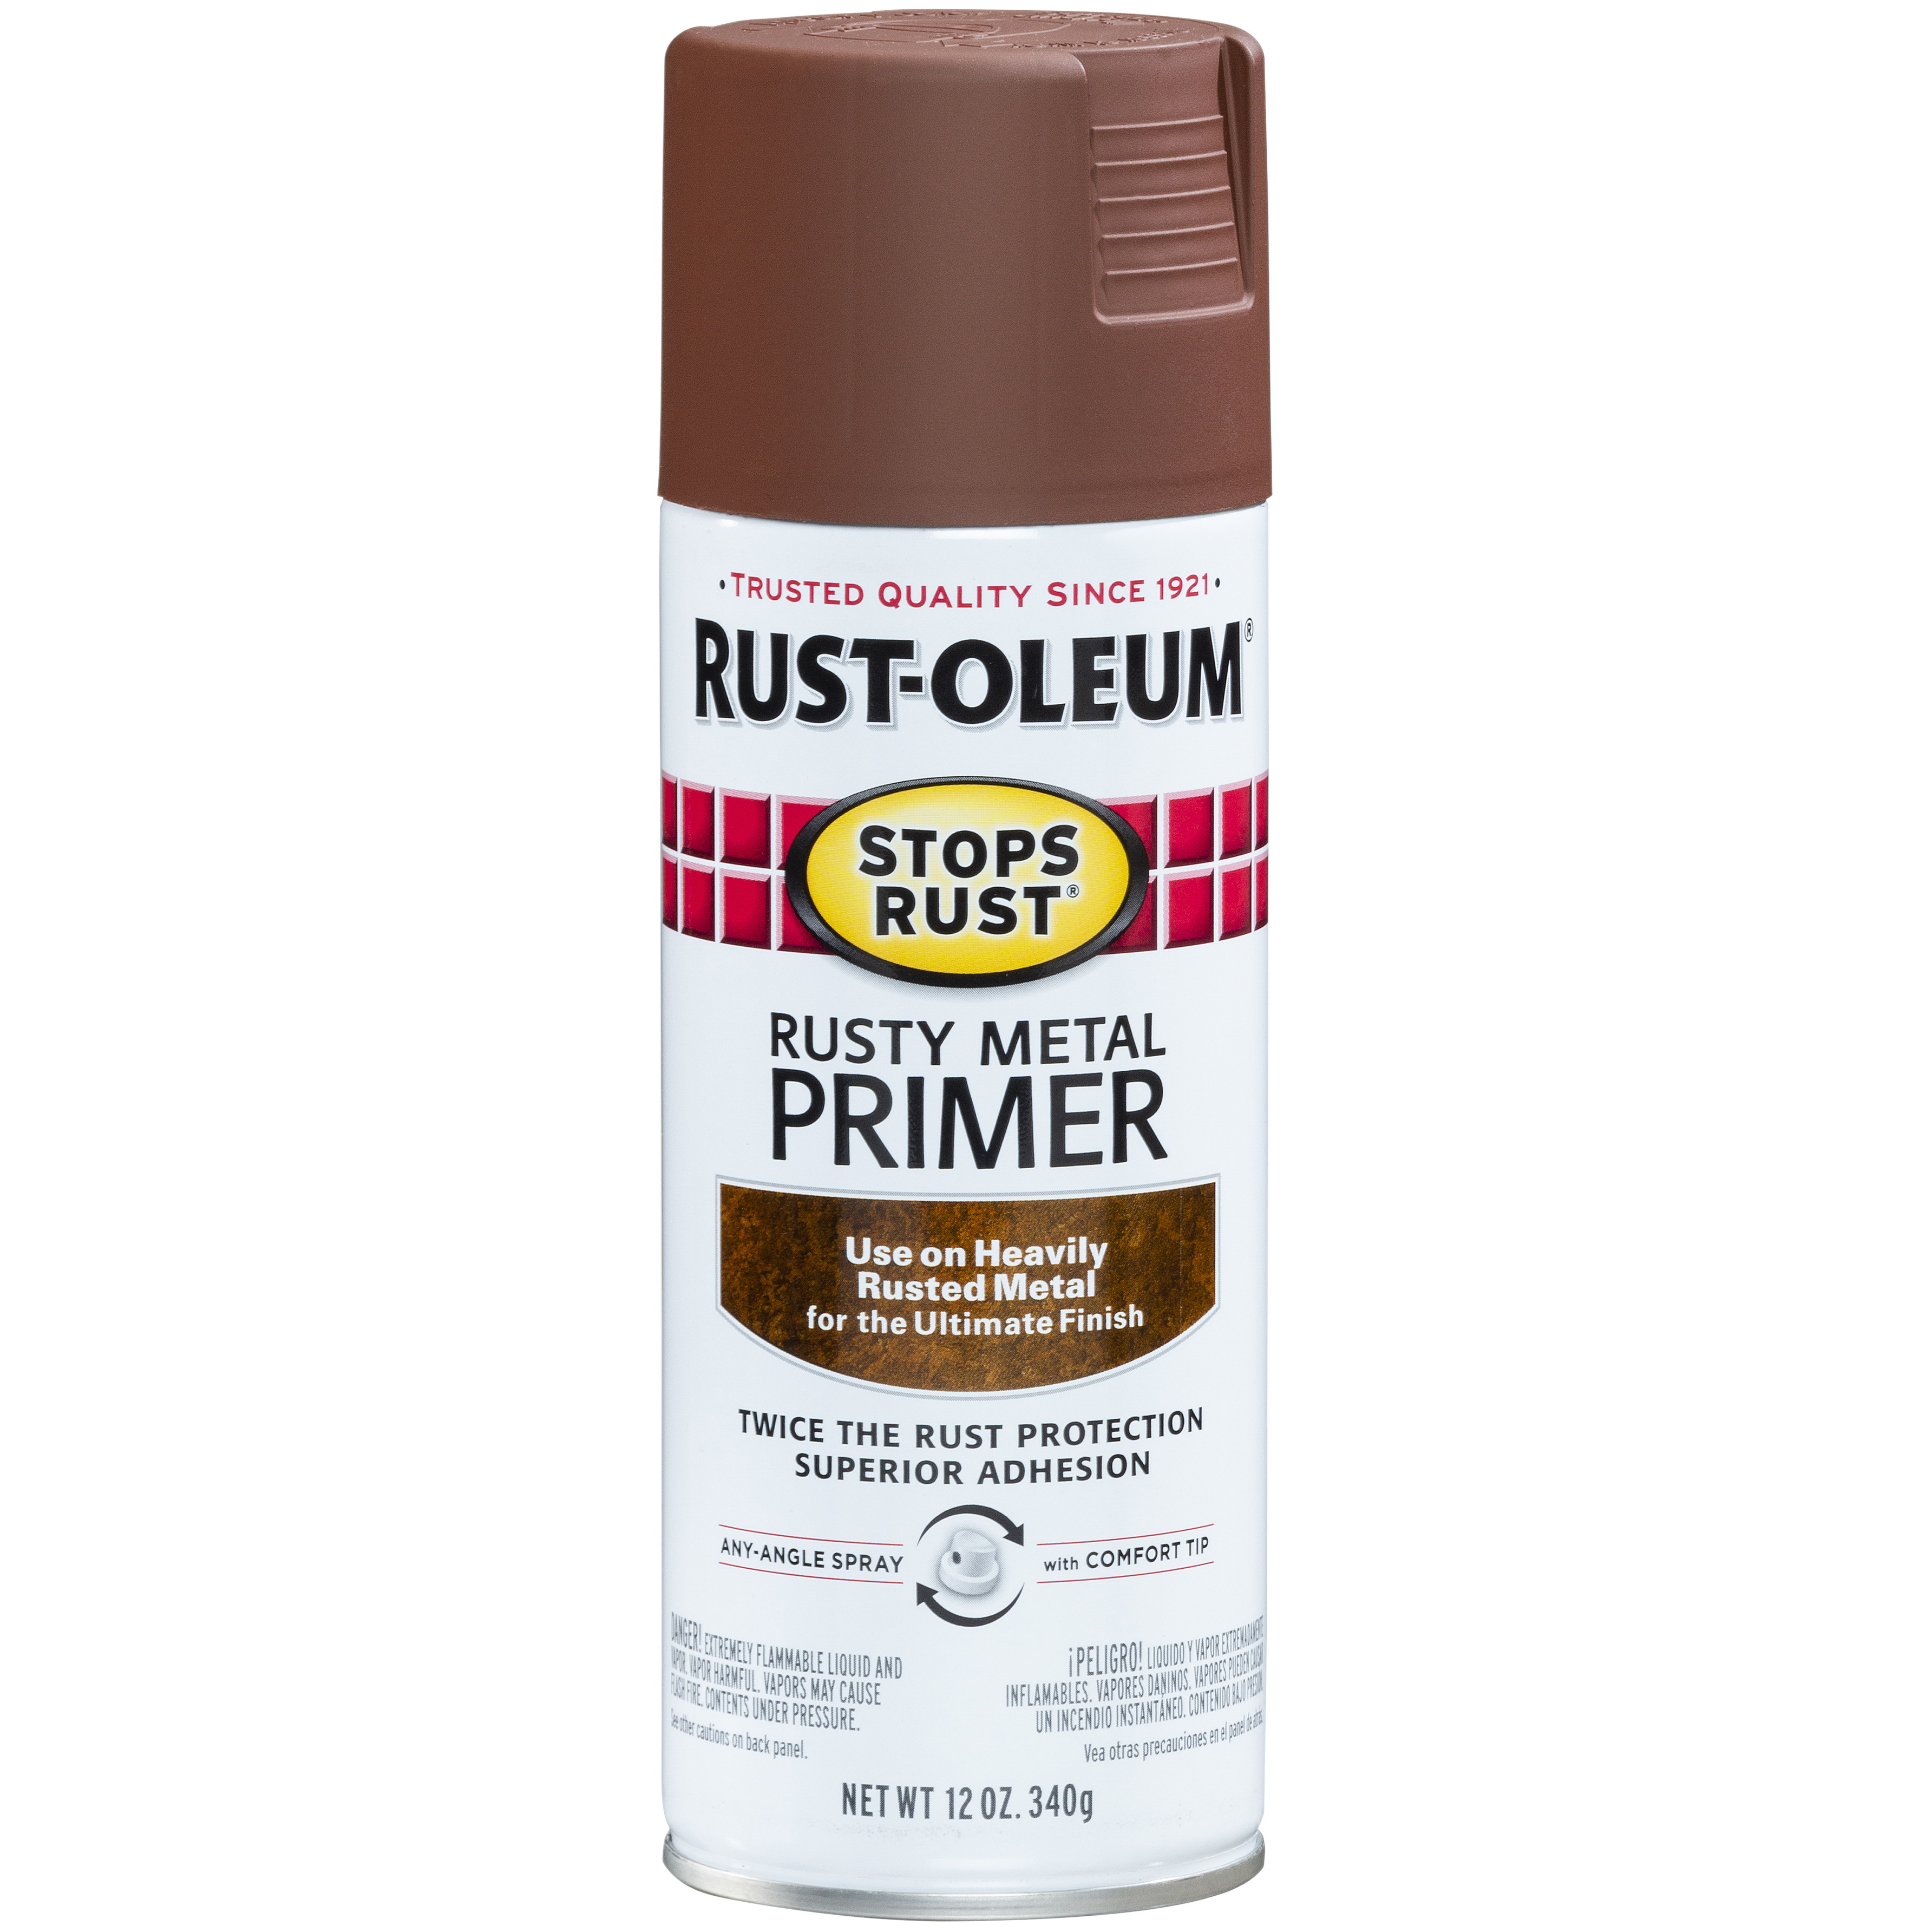 Rust-Oleum 7569838 Primer, Red, Flat, 15 oz